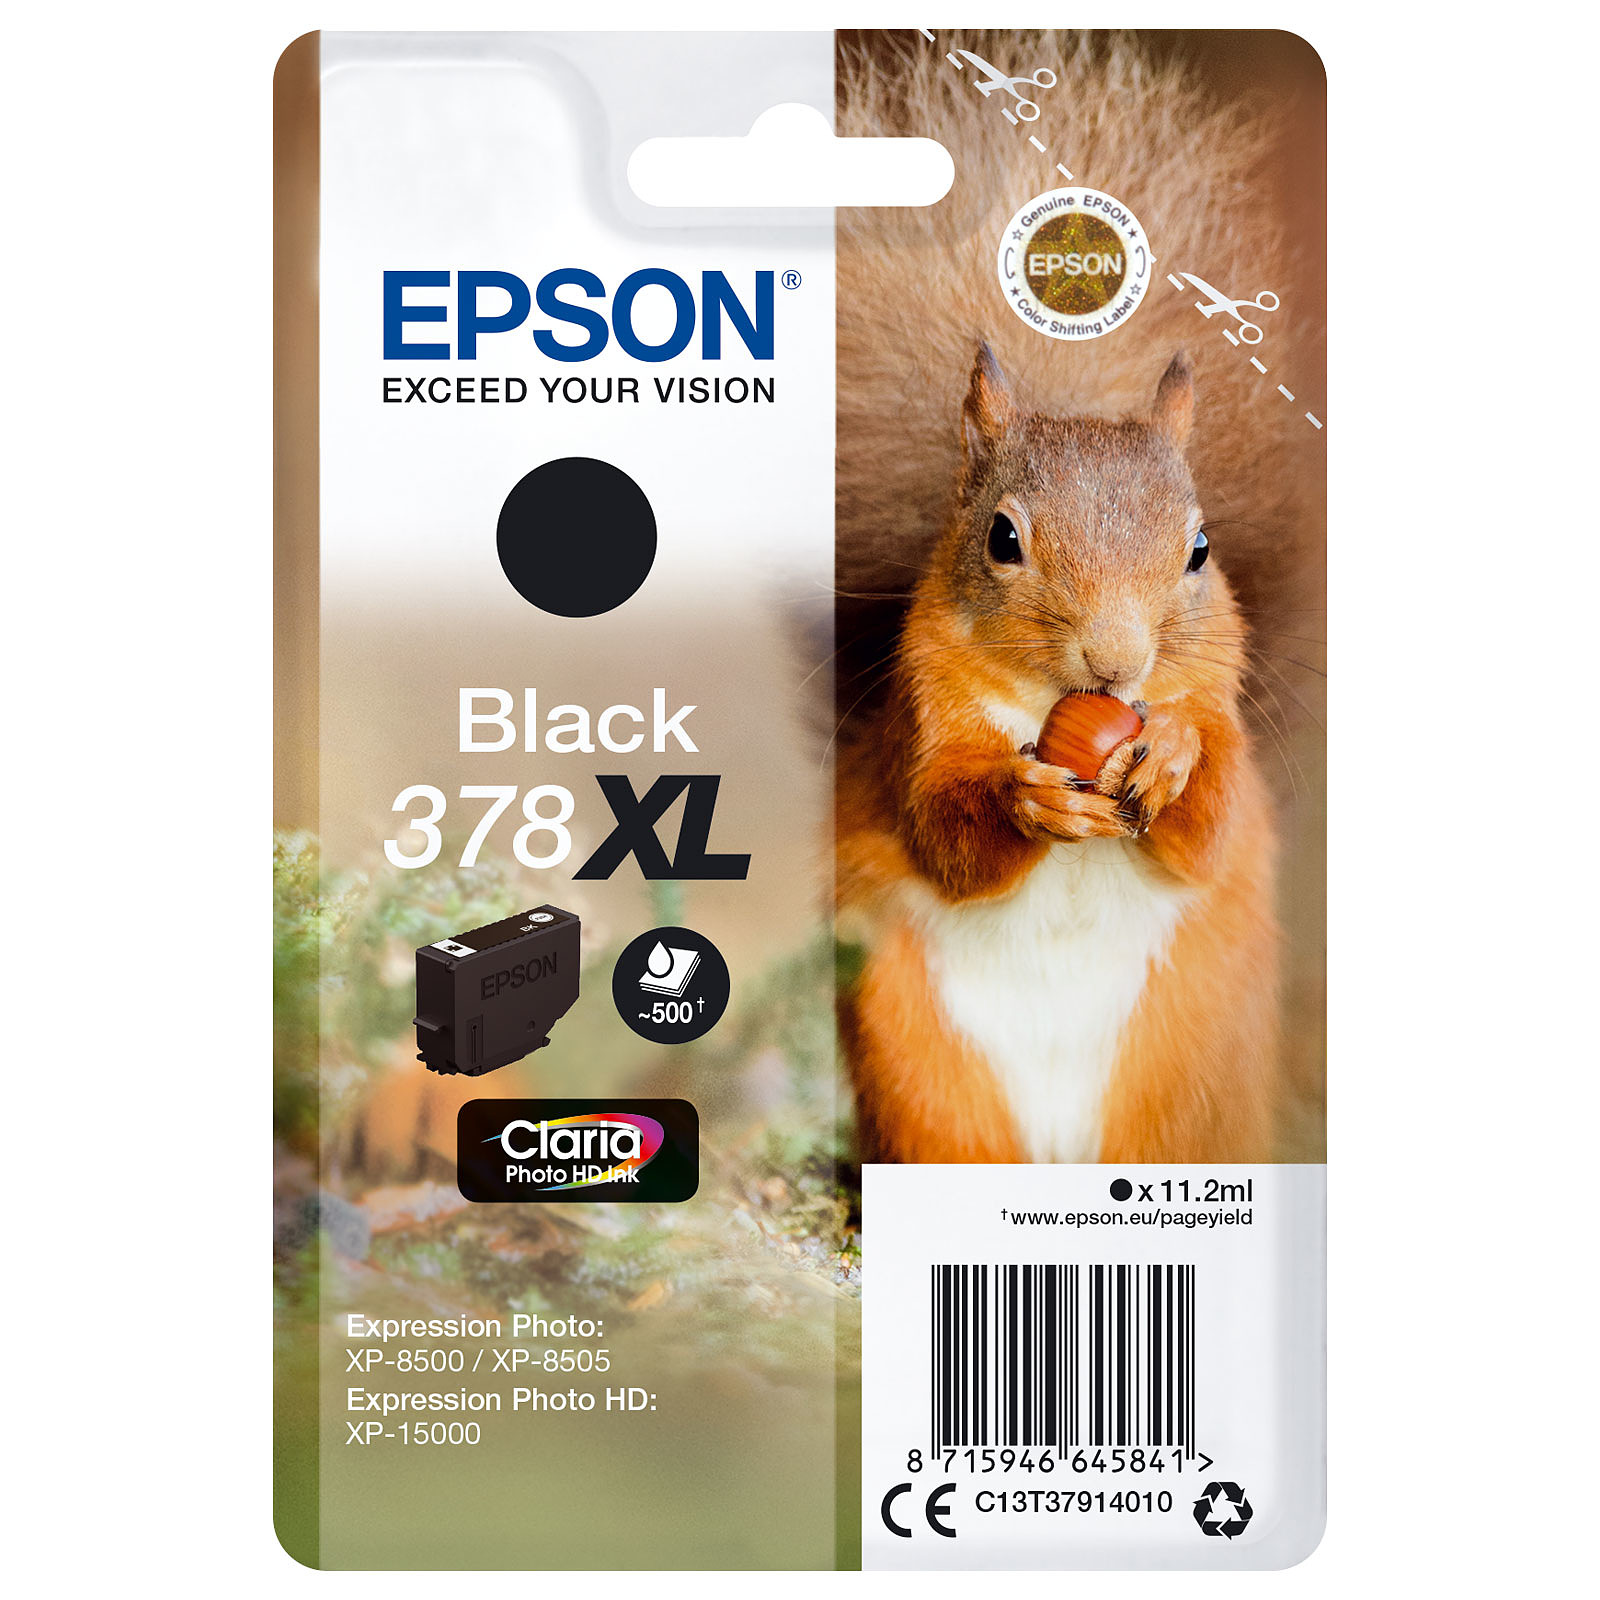 Epson Ecureuil Noir 378XL - Cartouche imprimante Epson